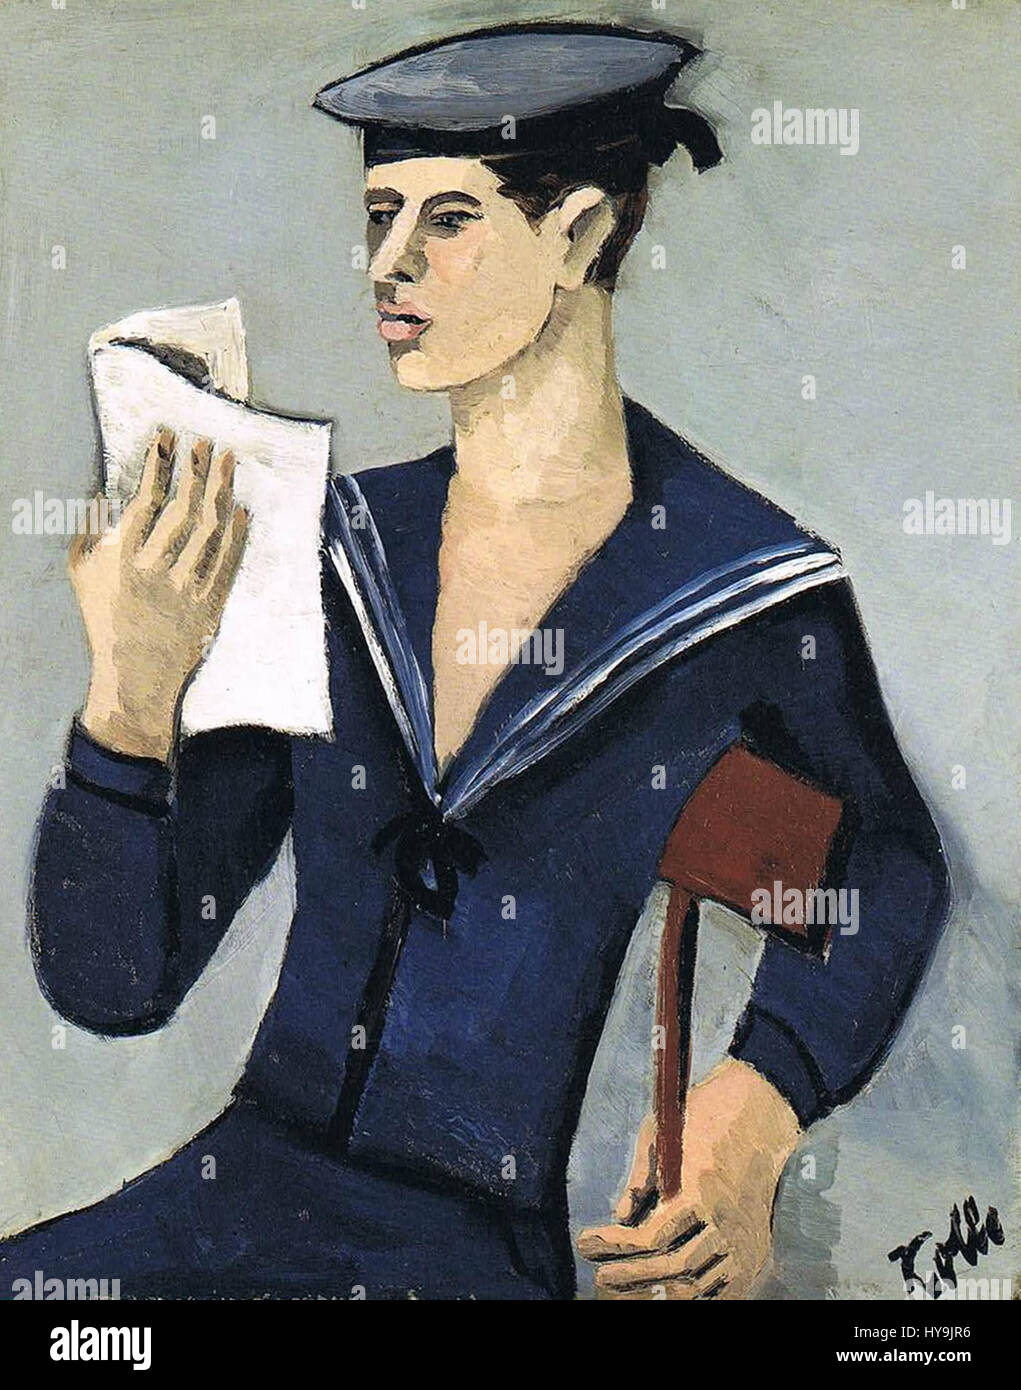 Helmut Kolle   Reading Sailor Stock Photo